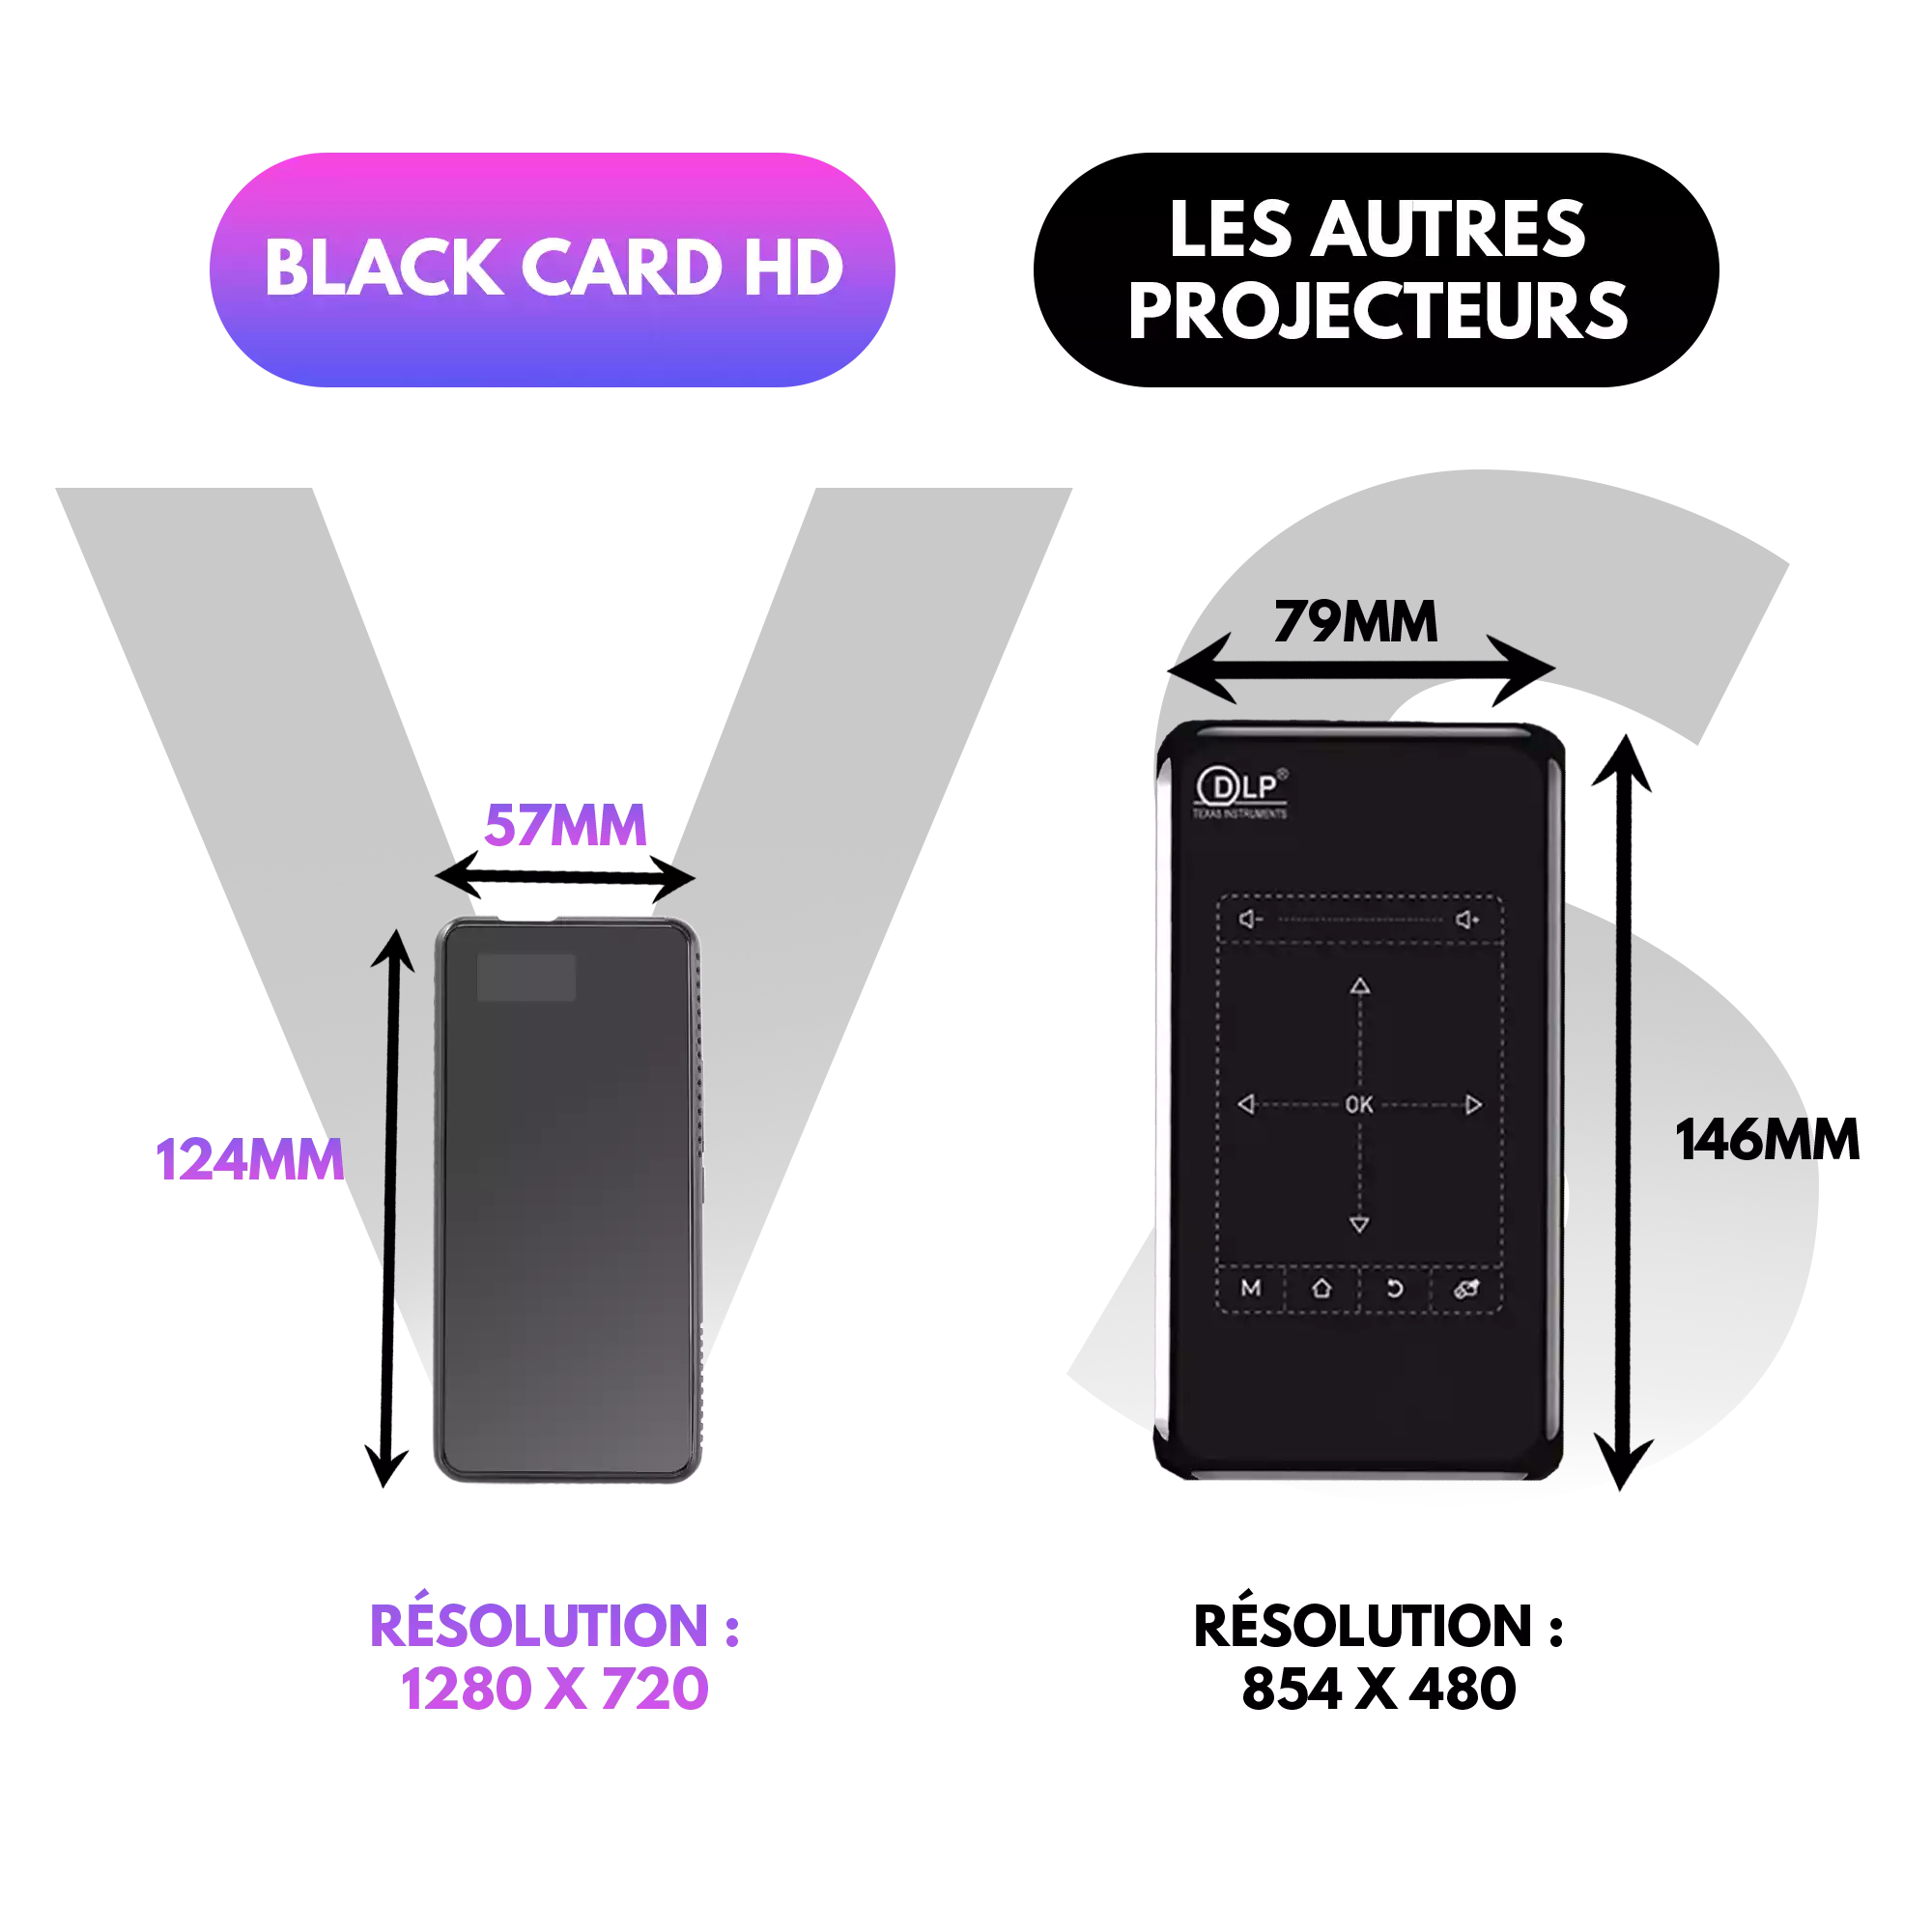 Mini projetor portátil | Black Card HD Jedee's